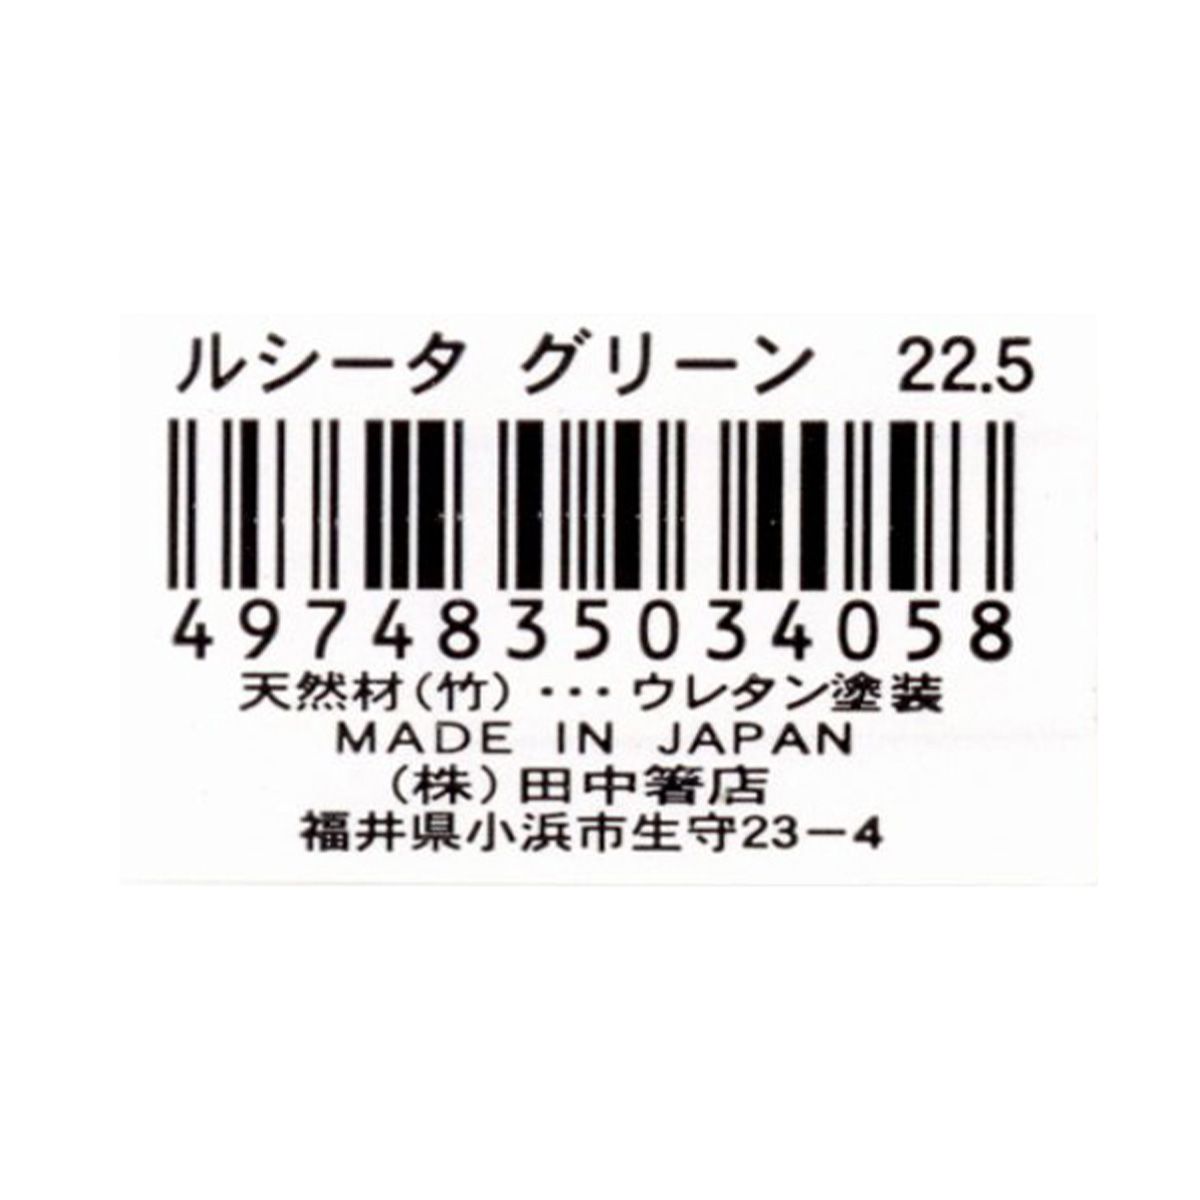 お箸 天然竹製  ルシータ箸 グリーン 22.5cm 9001/345943